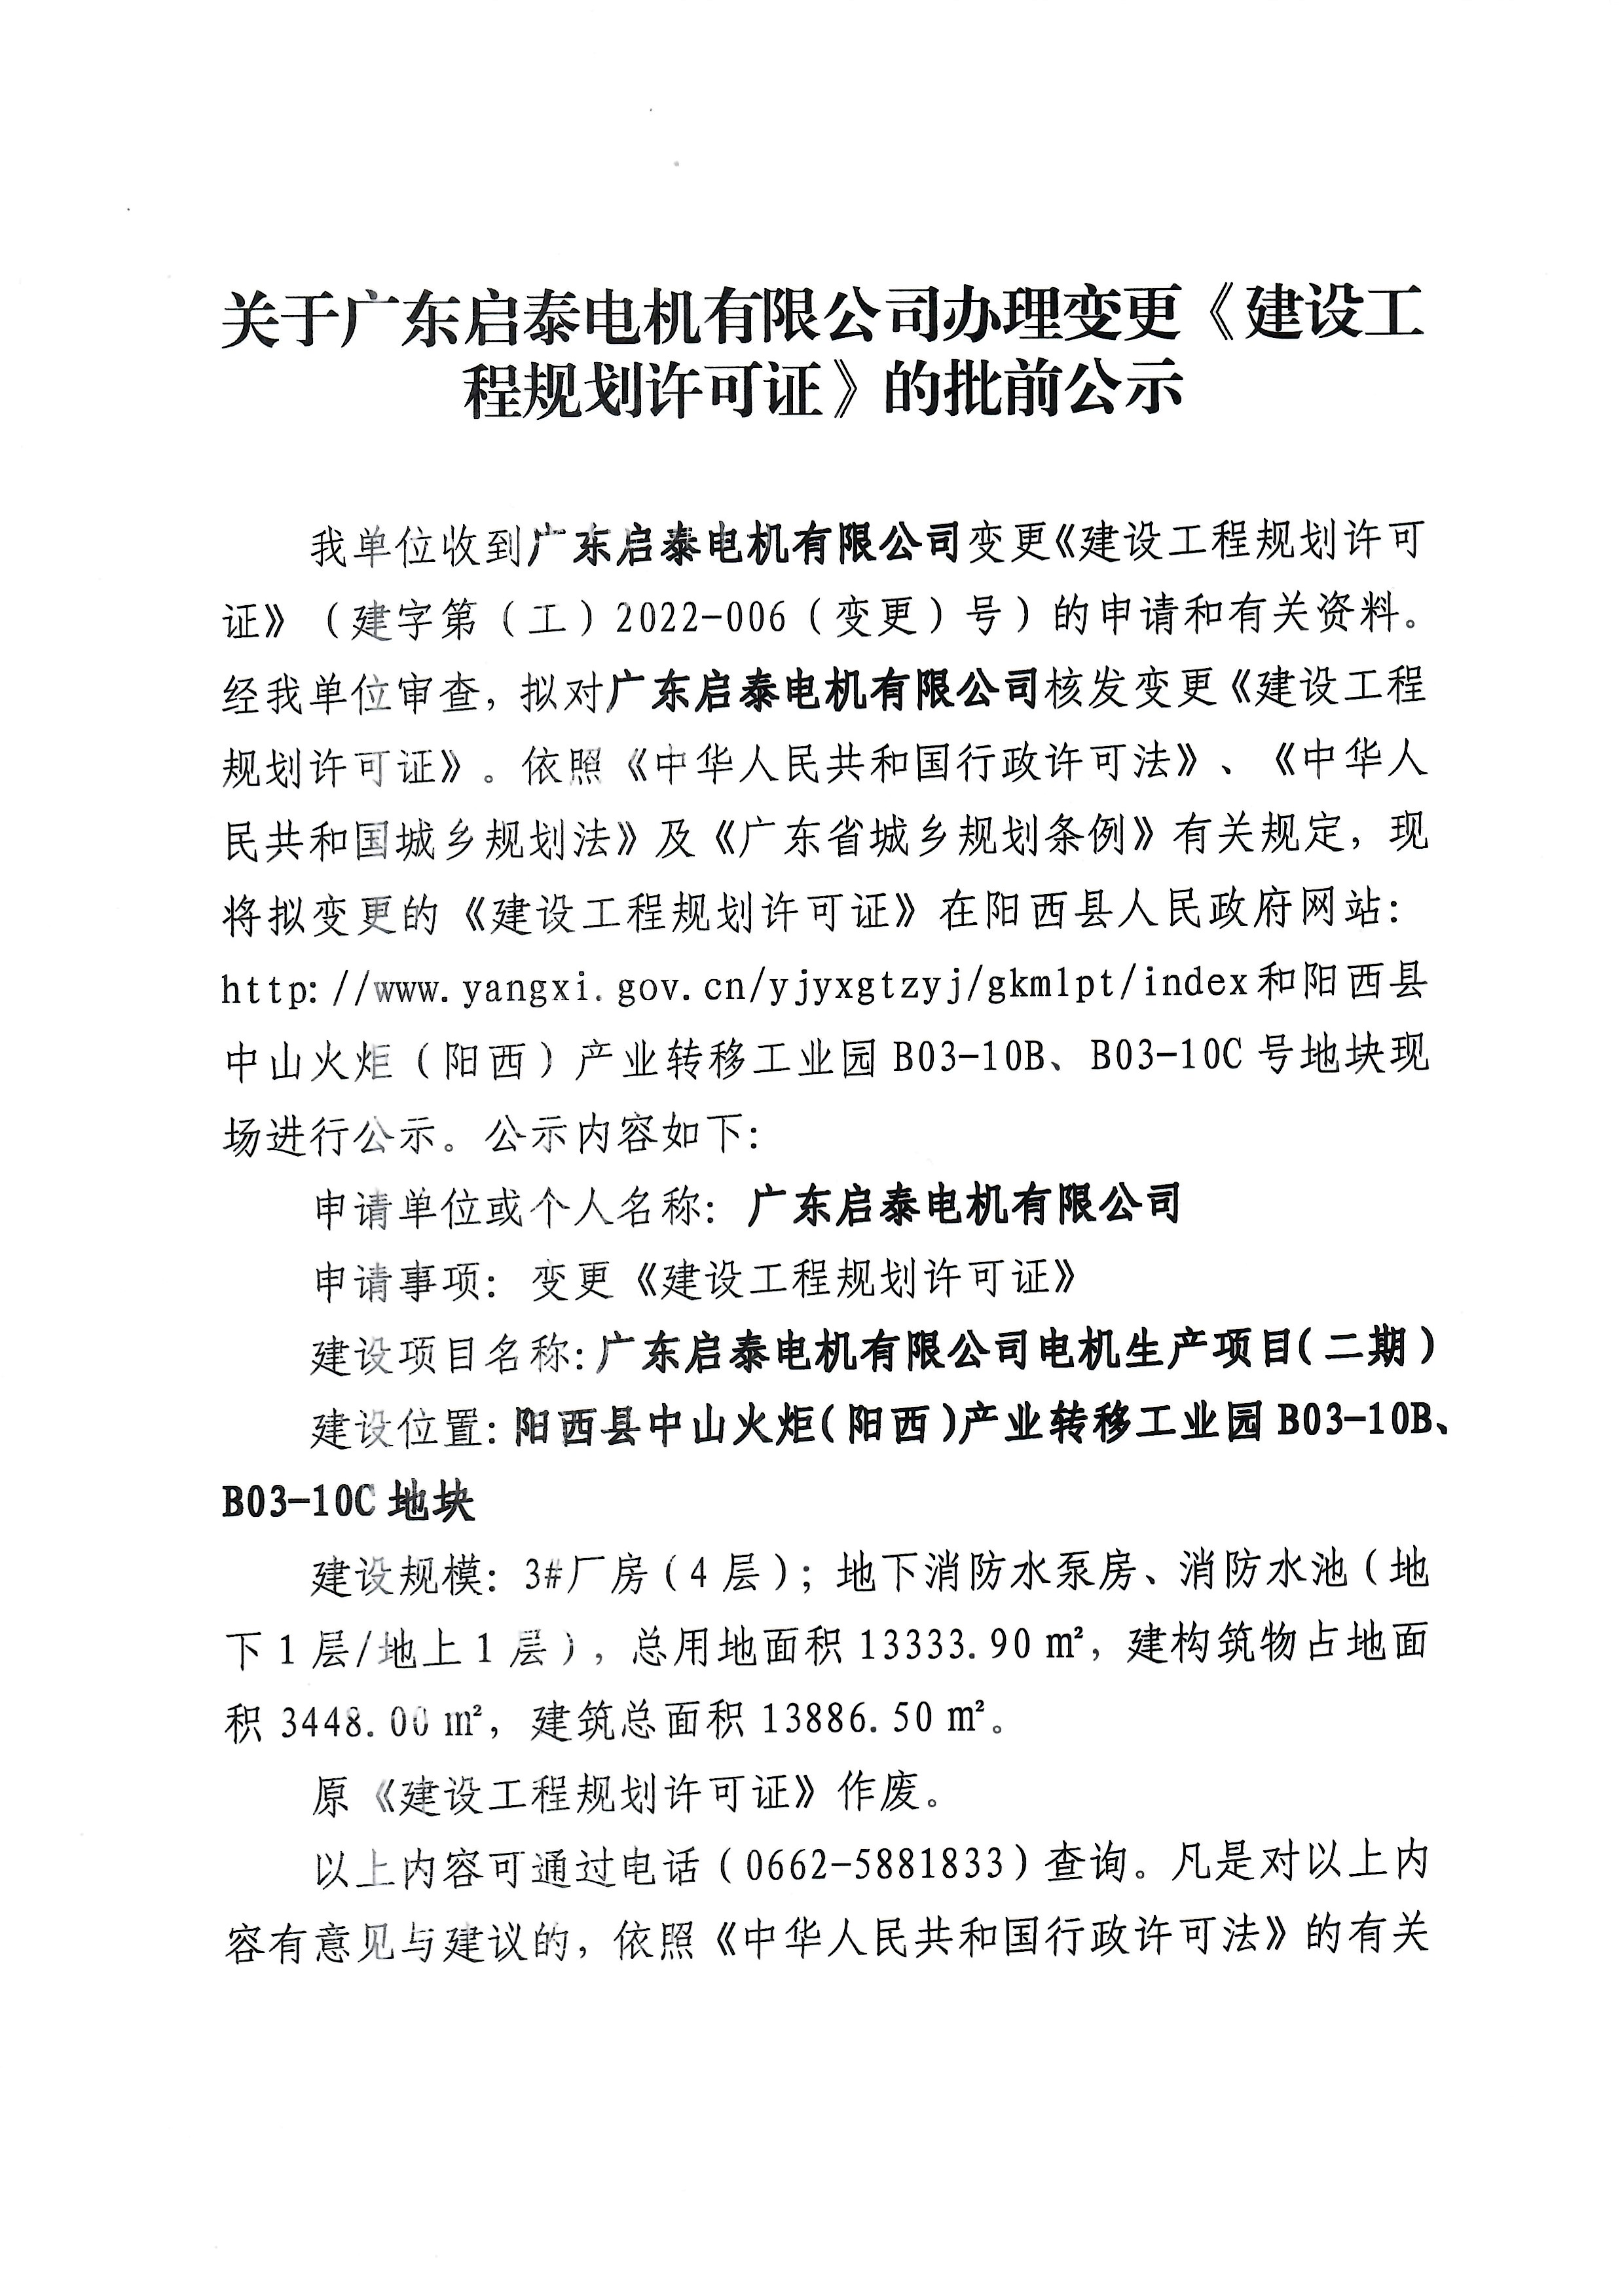 关于广东启泰电机有限公司办理变更《建设工程规划许可证》的批前公示1.jpg